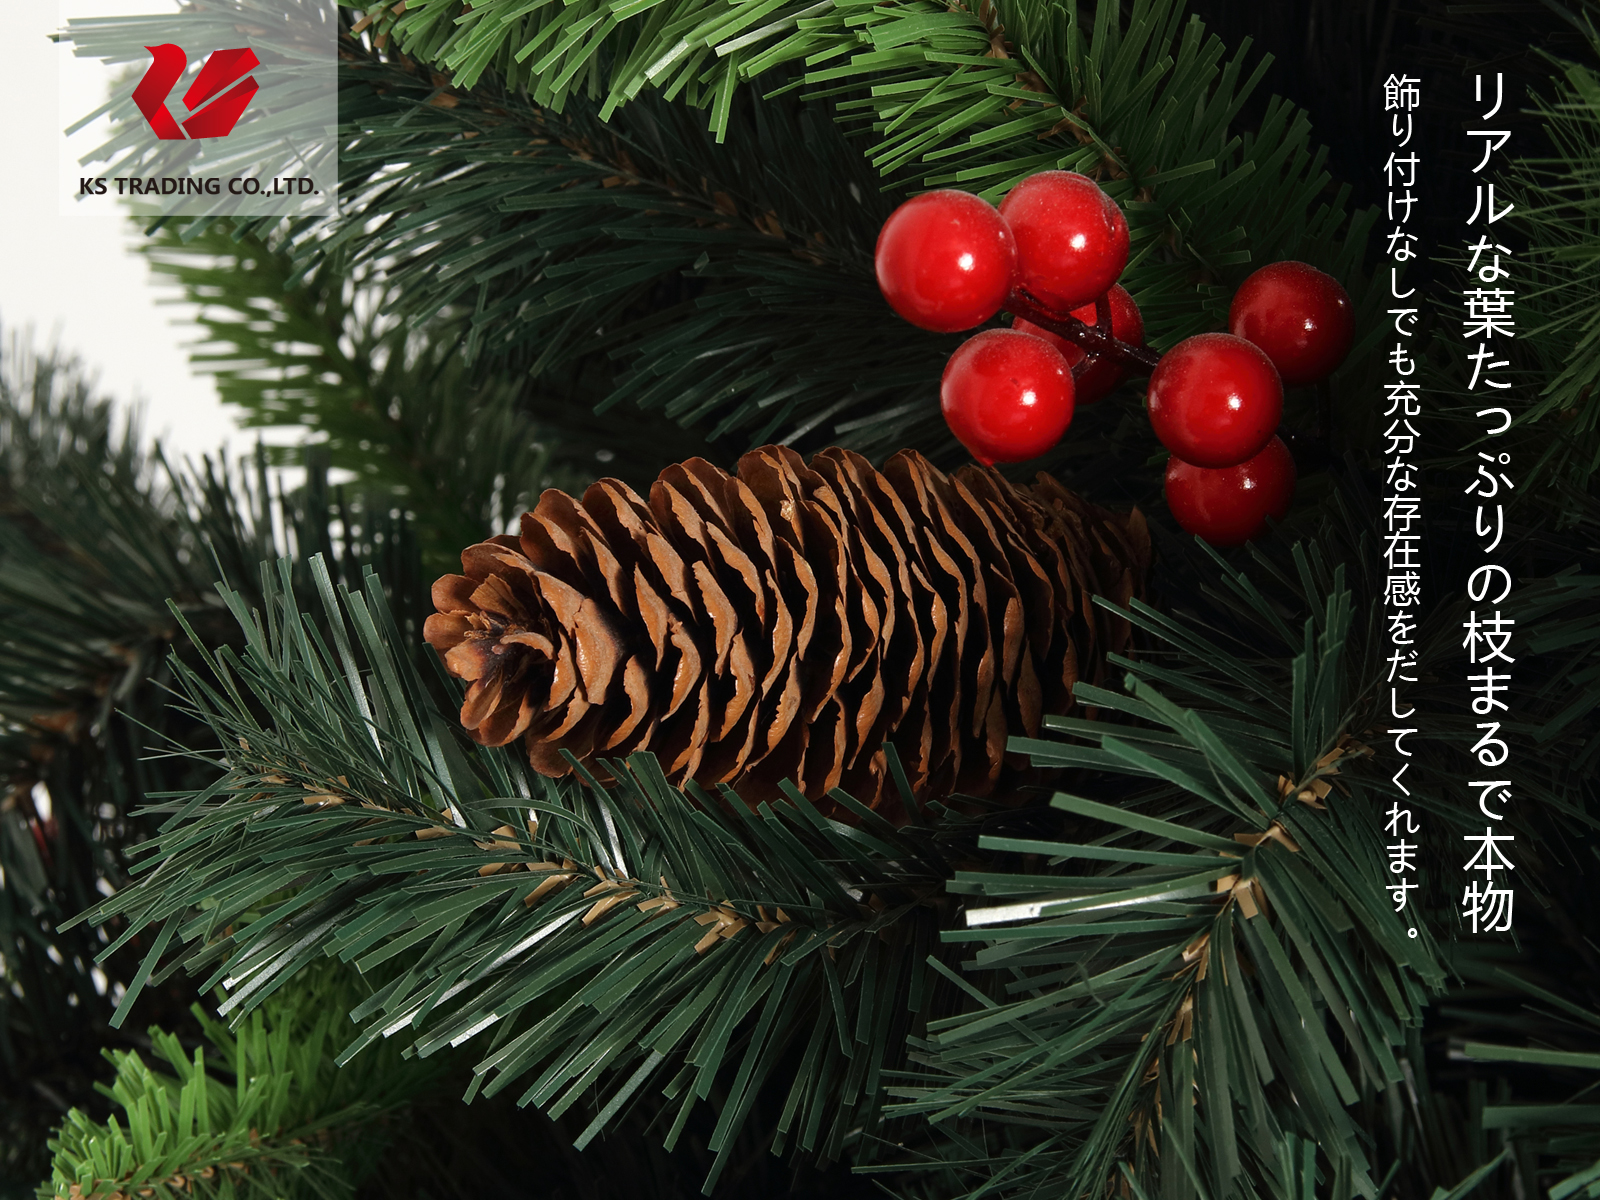 品数豊富 クリスマスツリー 枝大幅増量タイプ 松ぼっくり付き 赤い実付き おしゃれな クリスマスツリー 180cm Ksbm 置物 オーナメント Indonesiadevelopmentforum Com